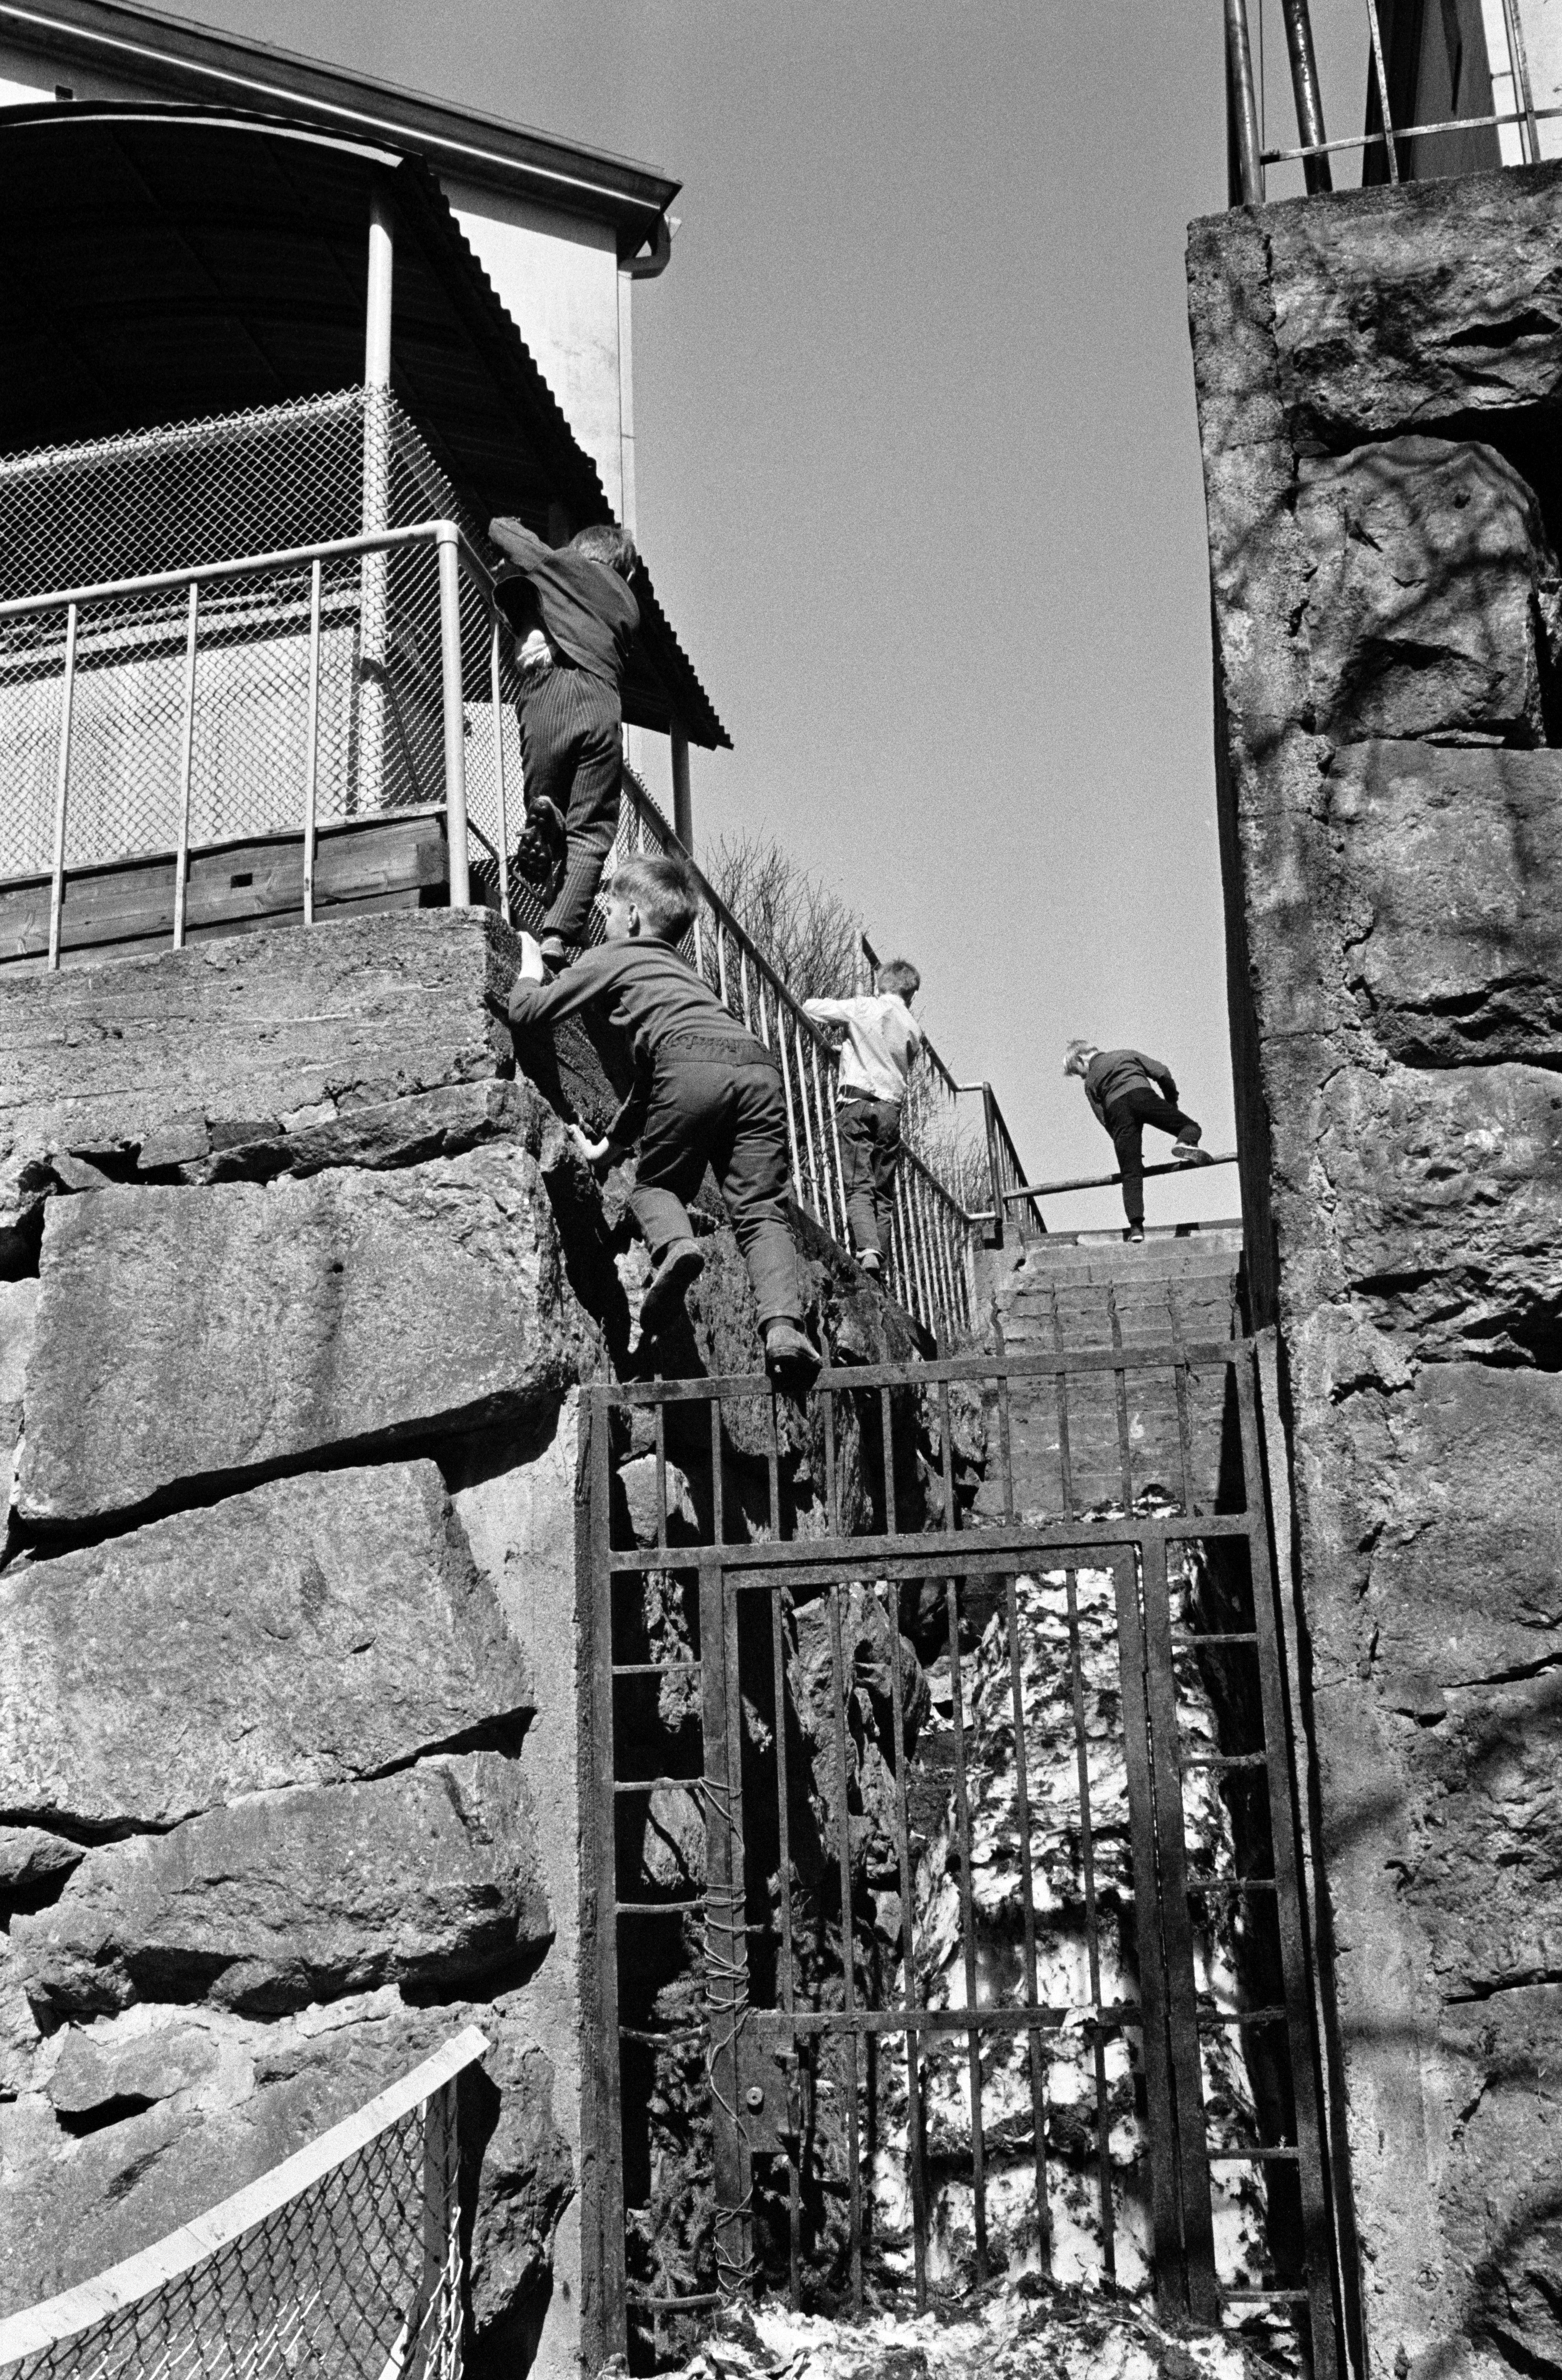 Neljä poikaa kiipeämässä Agricolankujan puistosta Torkkelinkujalle johtavien portaiden aitojen yli